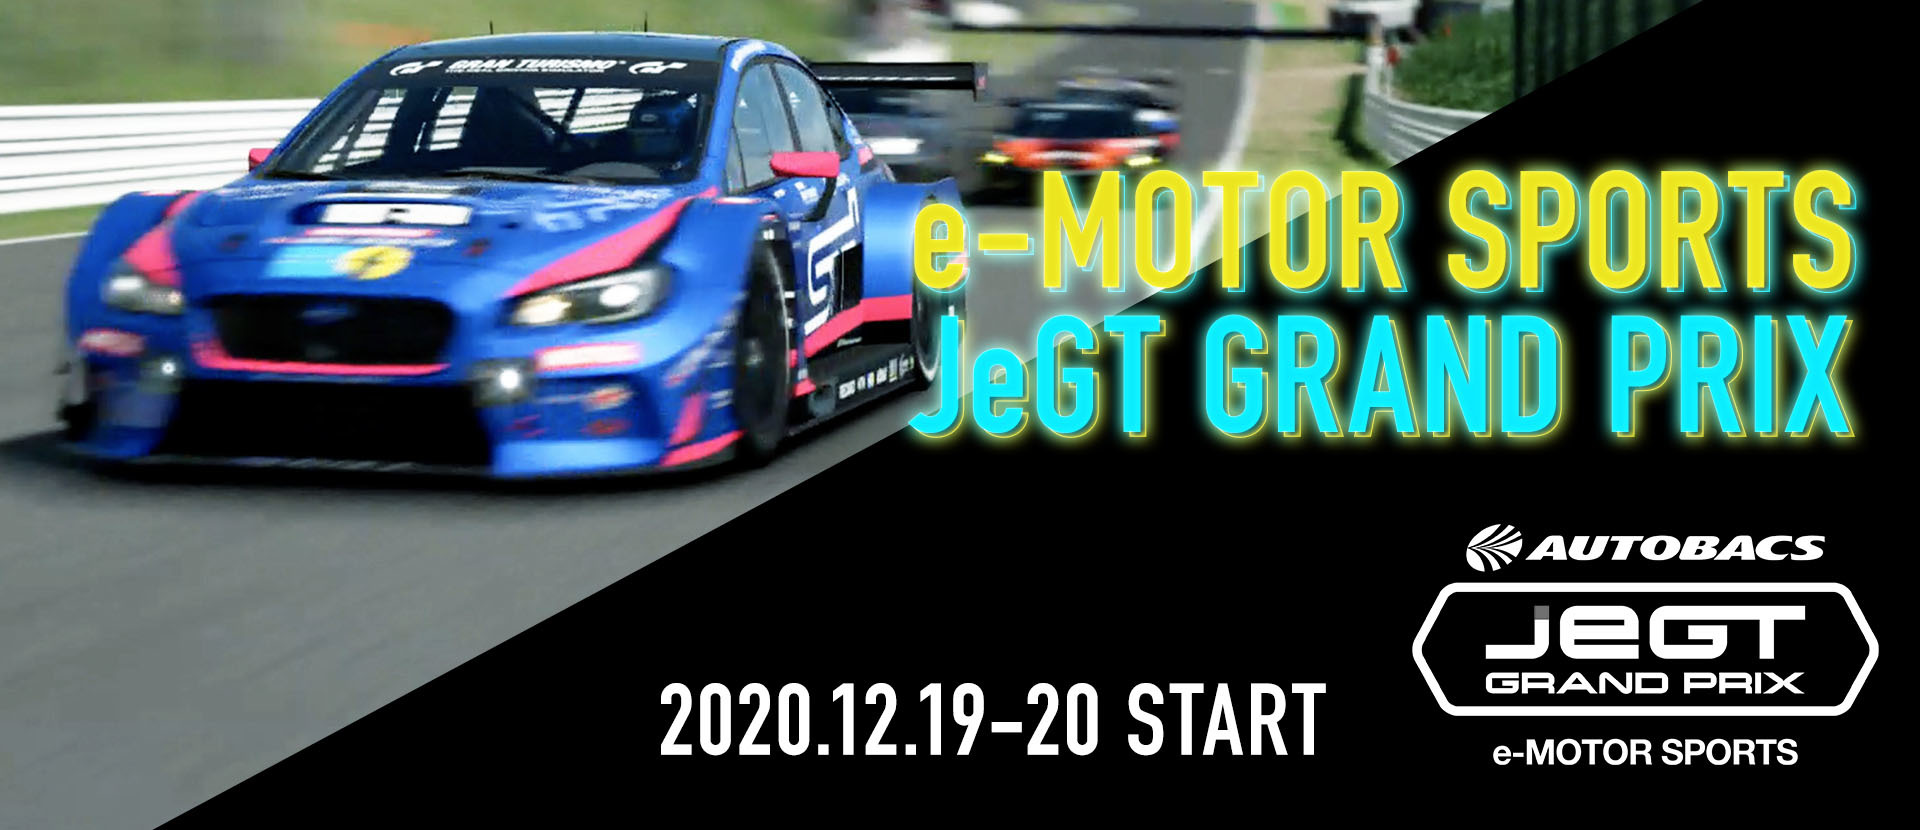 BITDAYSにて、eモータースポーツの頂点を決める
「AUTOBACS JeGT GRAND PRIX 2020 Series」の
特集コンテンツを公開